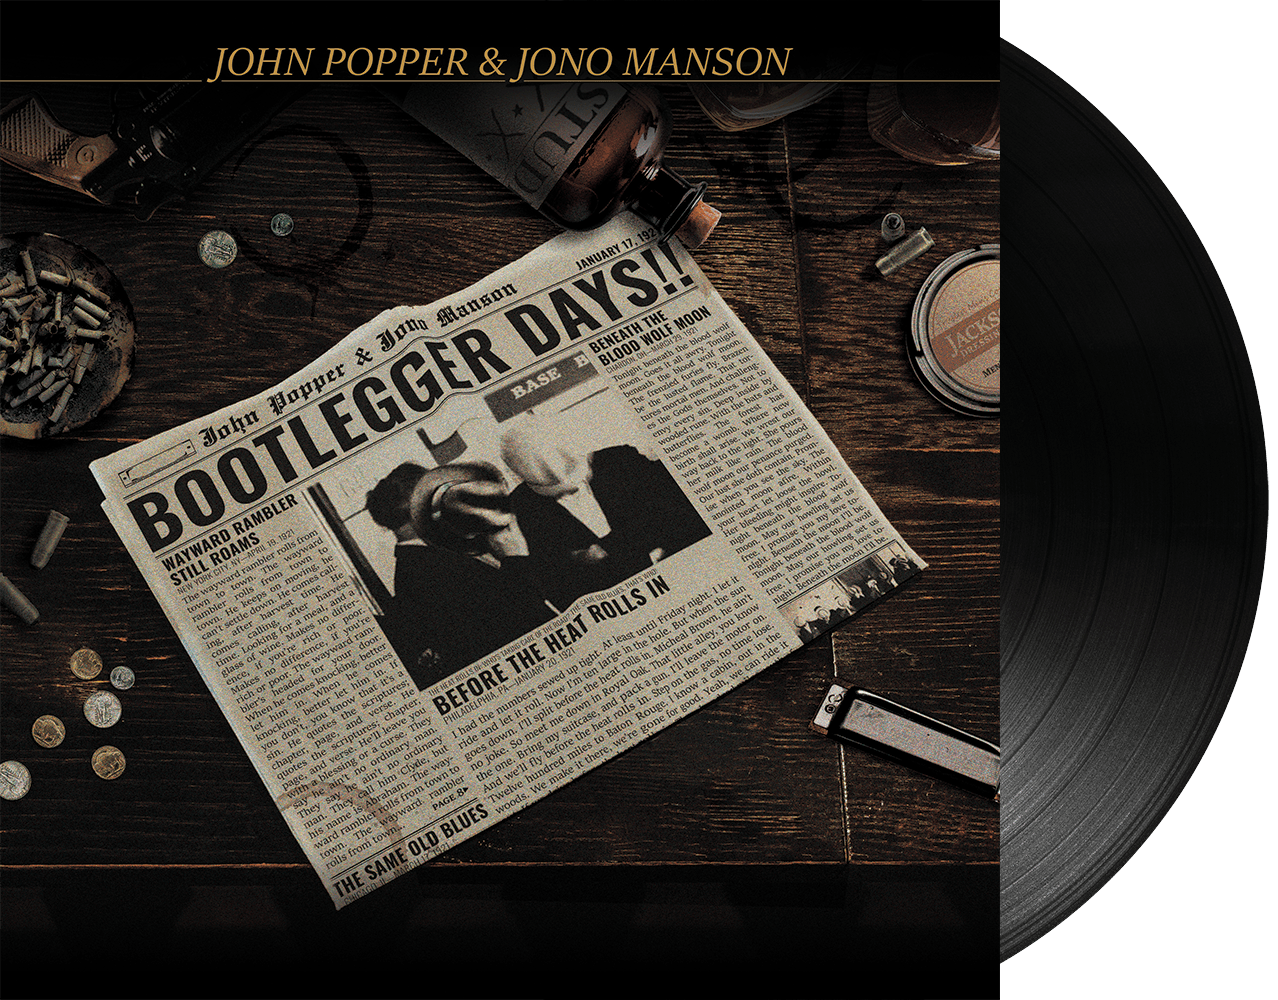 John Popper & Jono Manson - Bootlegger Days!! Black Vinyl LP